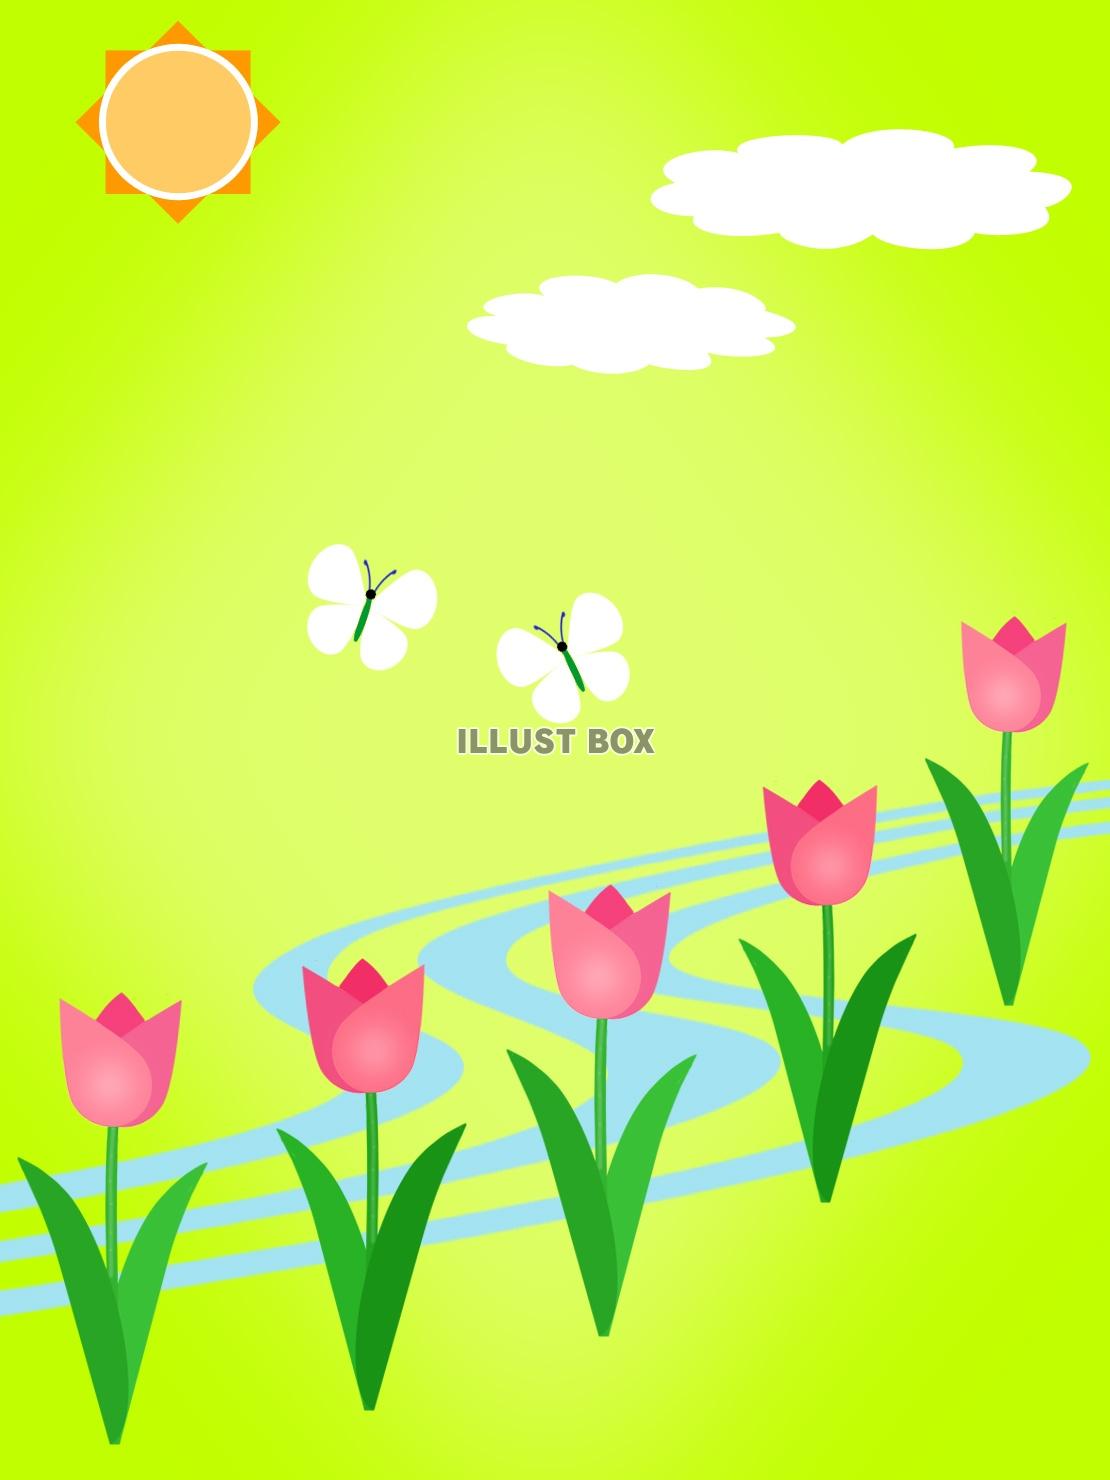 無料イラスト 春の風景 蝶々チューリップ太陽のイラスト